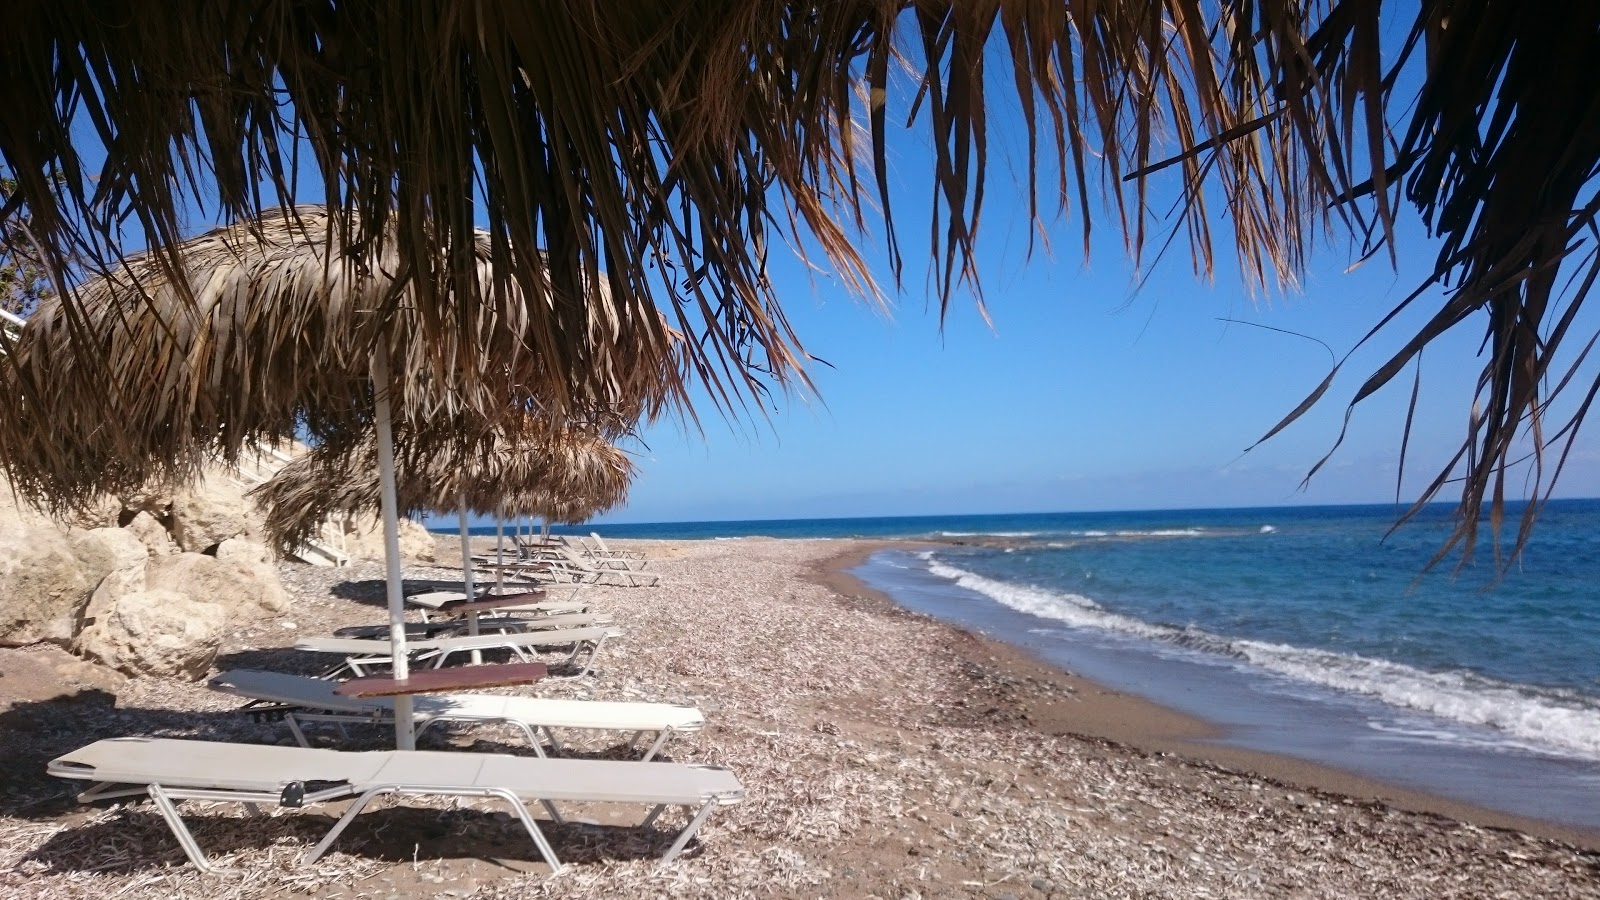 Foto de Bonamare beach - lugar popular entre los conocedores del relax